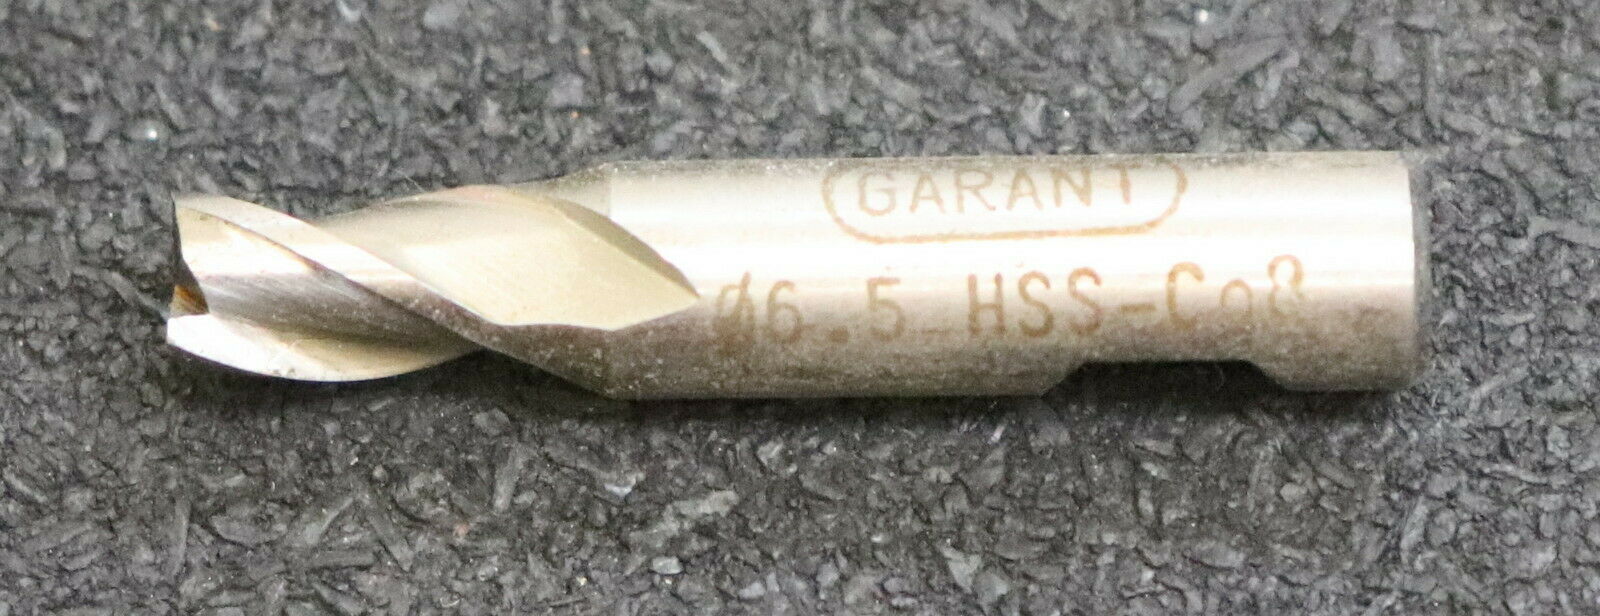 GARANT 5 Stück Schaftfräser 19212 Ø 6,5mm 3-Schneider HSS-Co8 Gesamtlänge 42mm